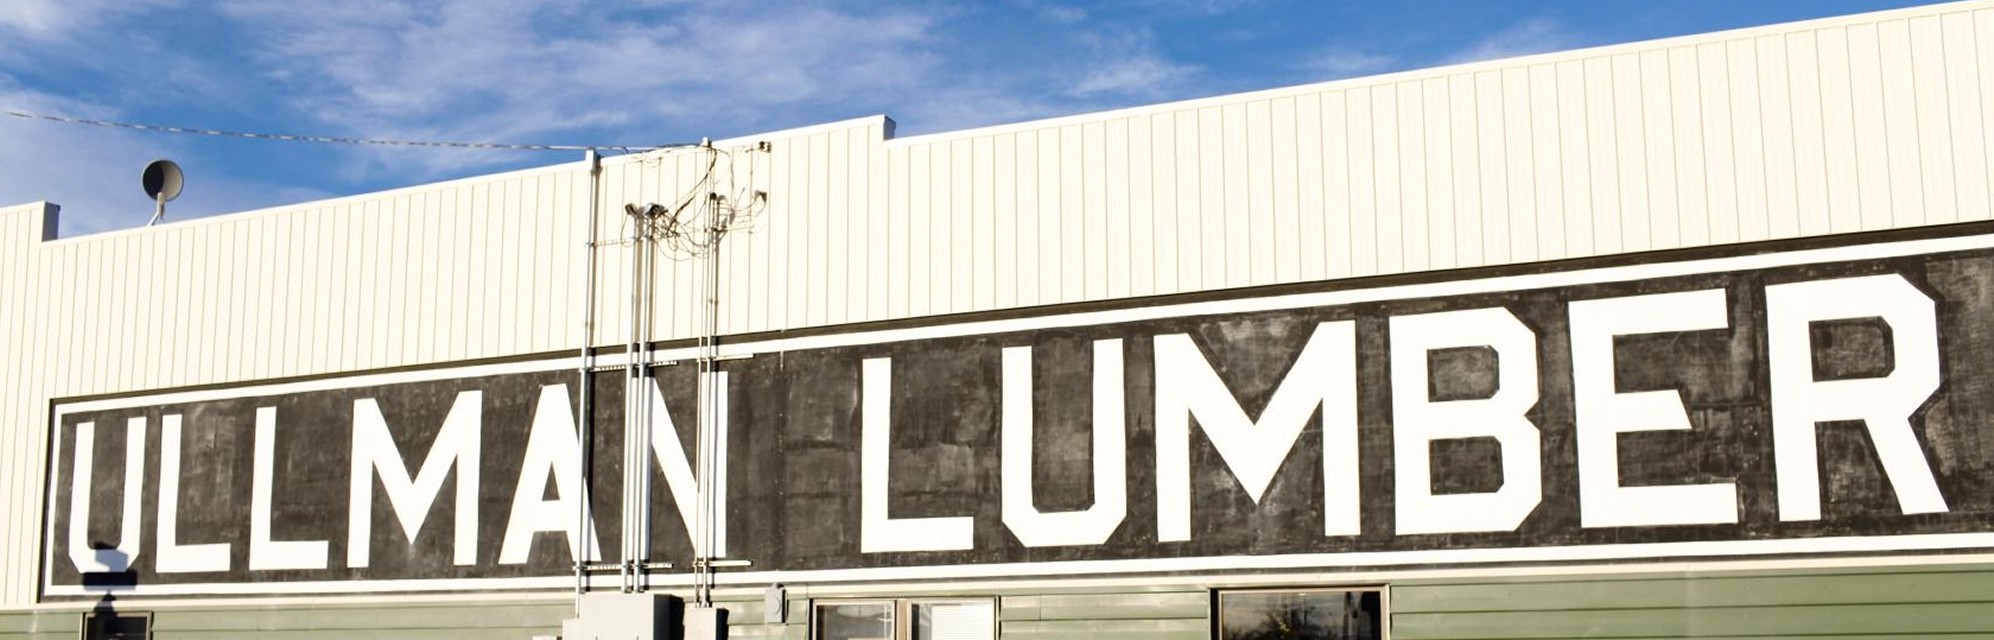 Ullman Lumber Building Exterior